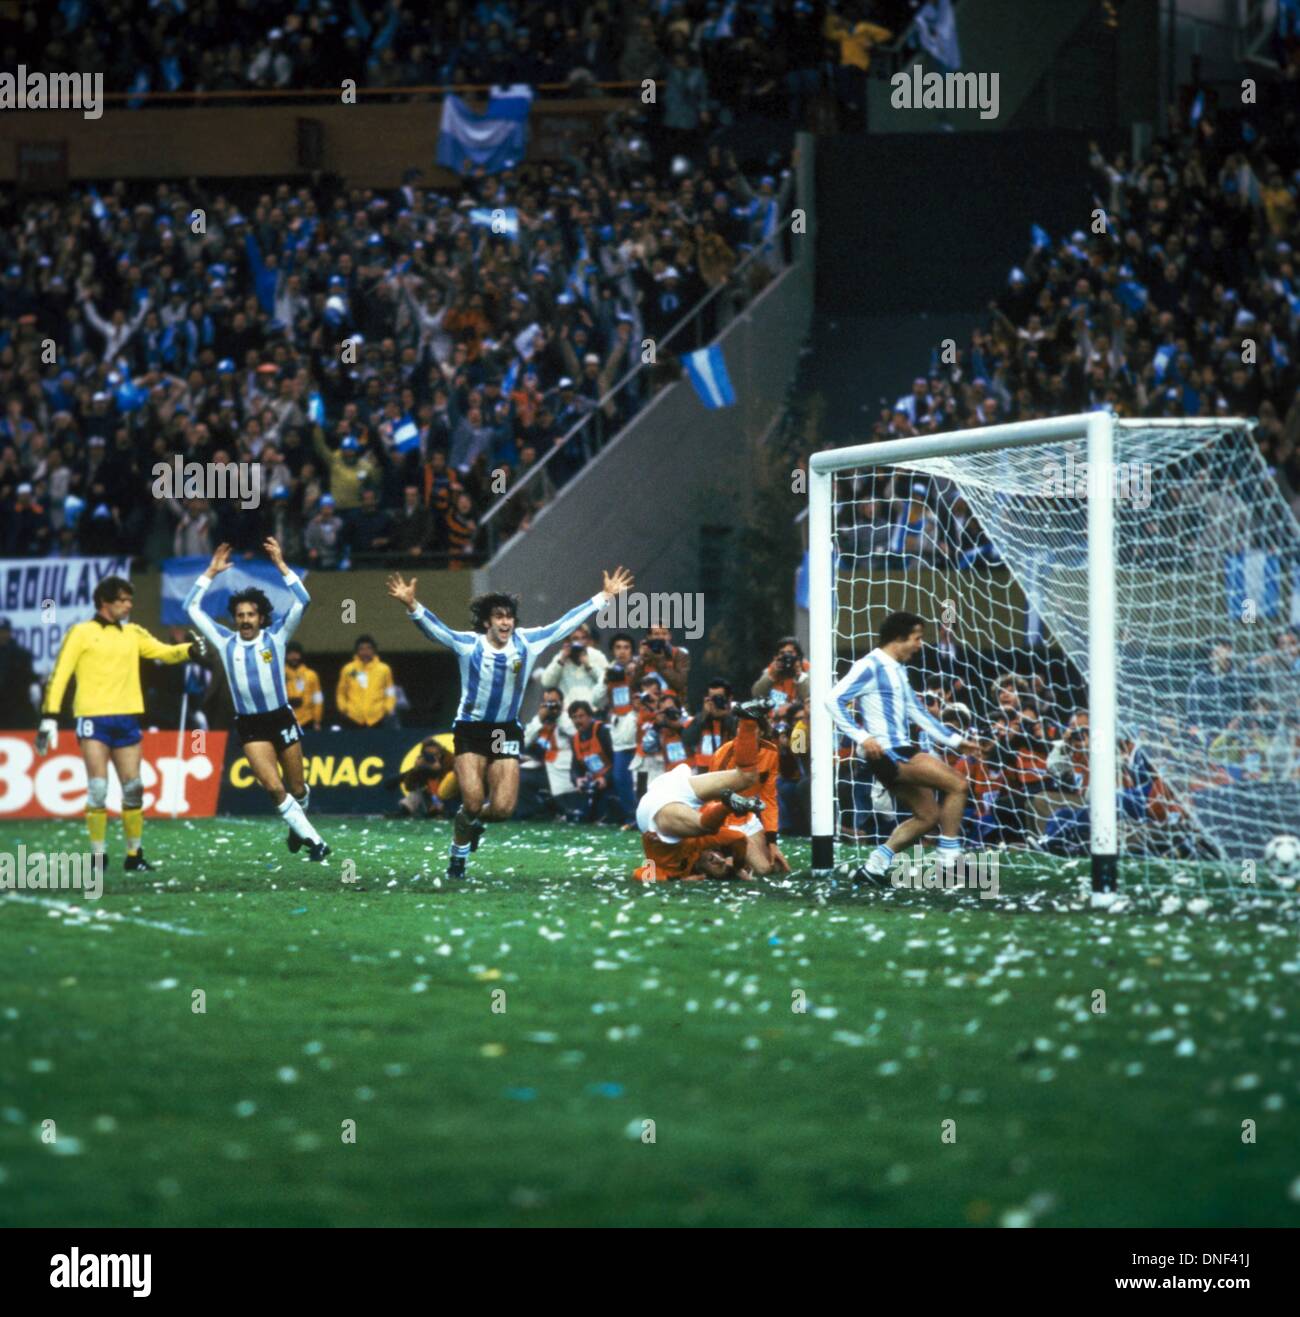 25.06.1978 Buenos Aires Argentina. Mario Kempes, Daniel Bertoni e Leopoldo Luque (Argentina) celebrano il loro gol nella finale di Coppa del mondo 1978. Foto Stock